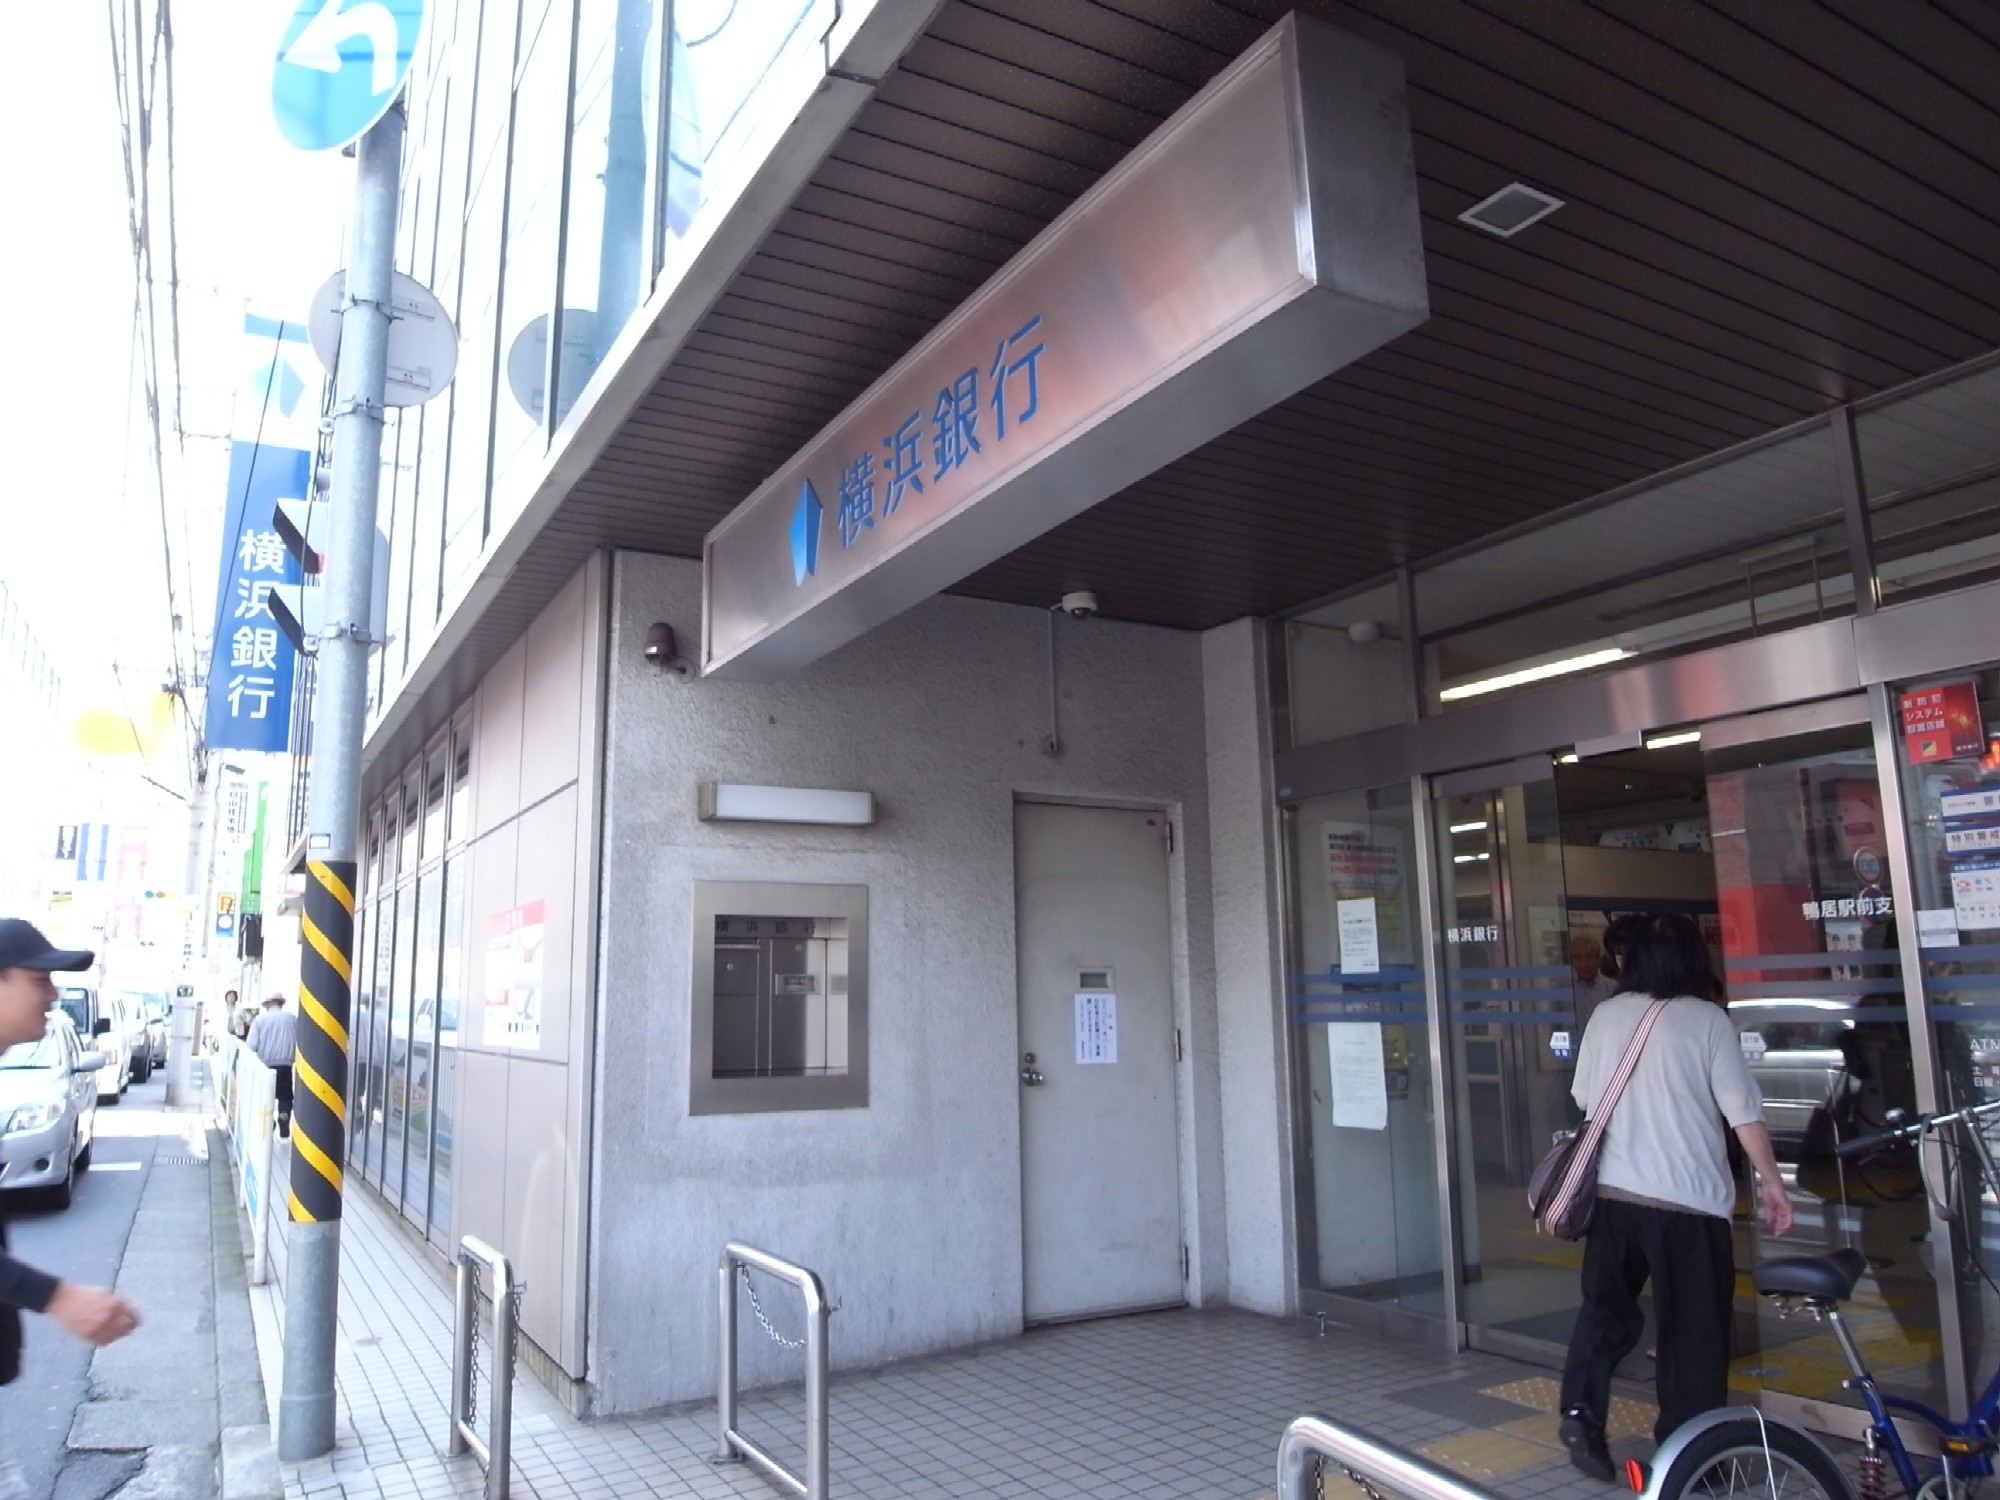 Bank. Bank of Yokohama lintel until Station Branch (Bank) 819m